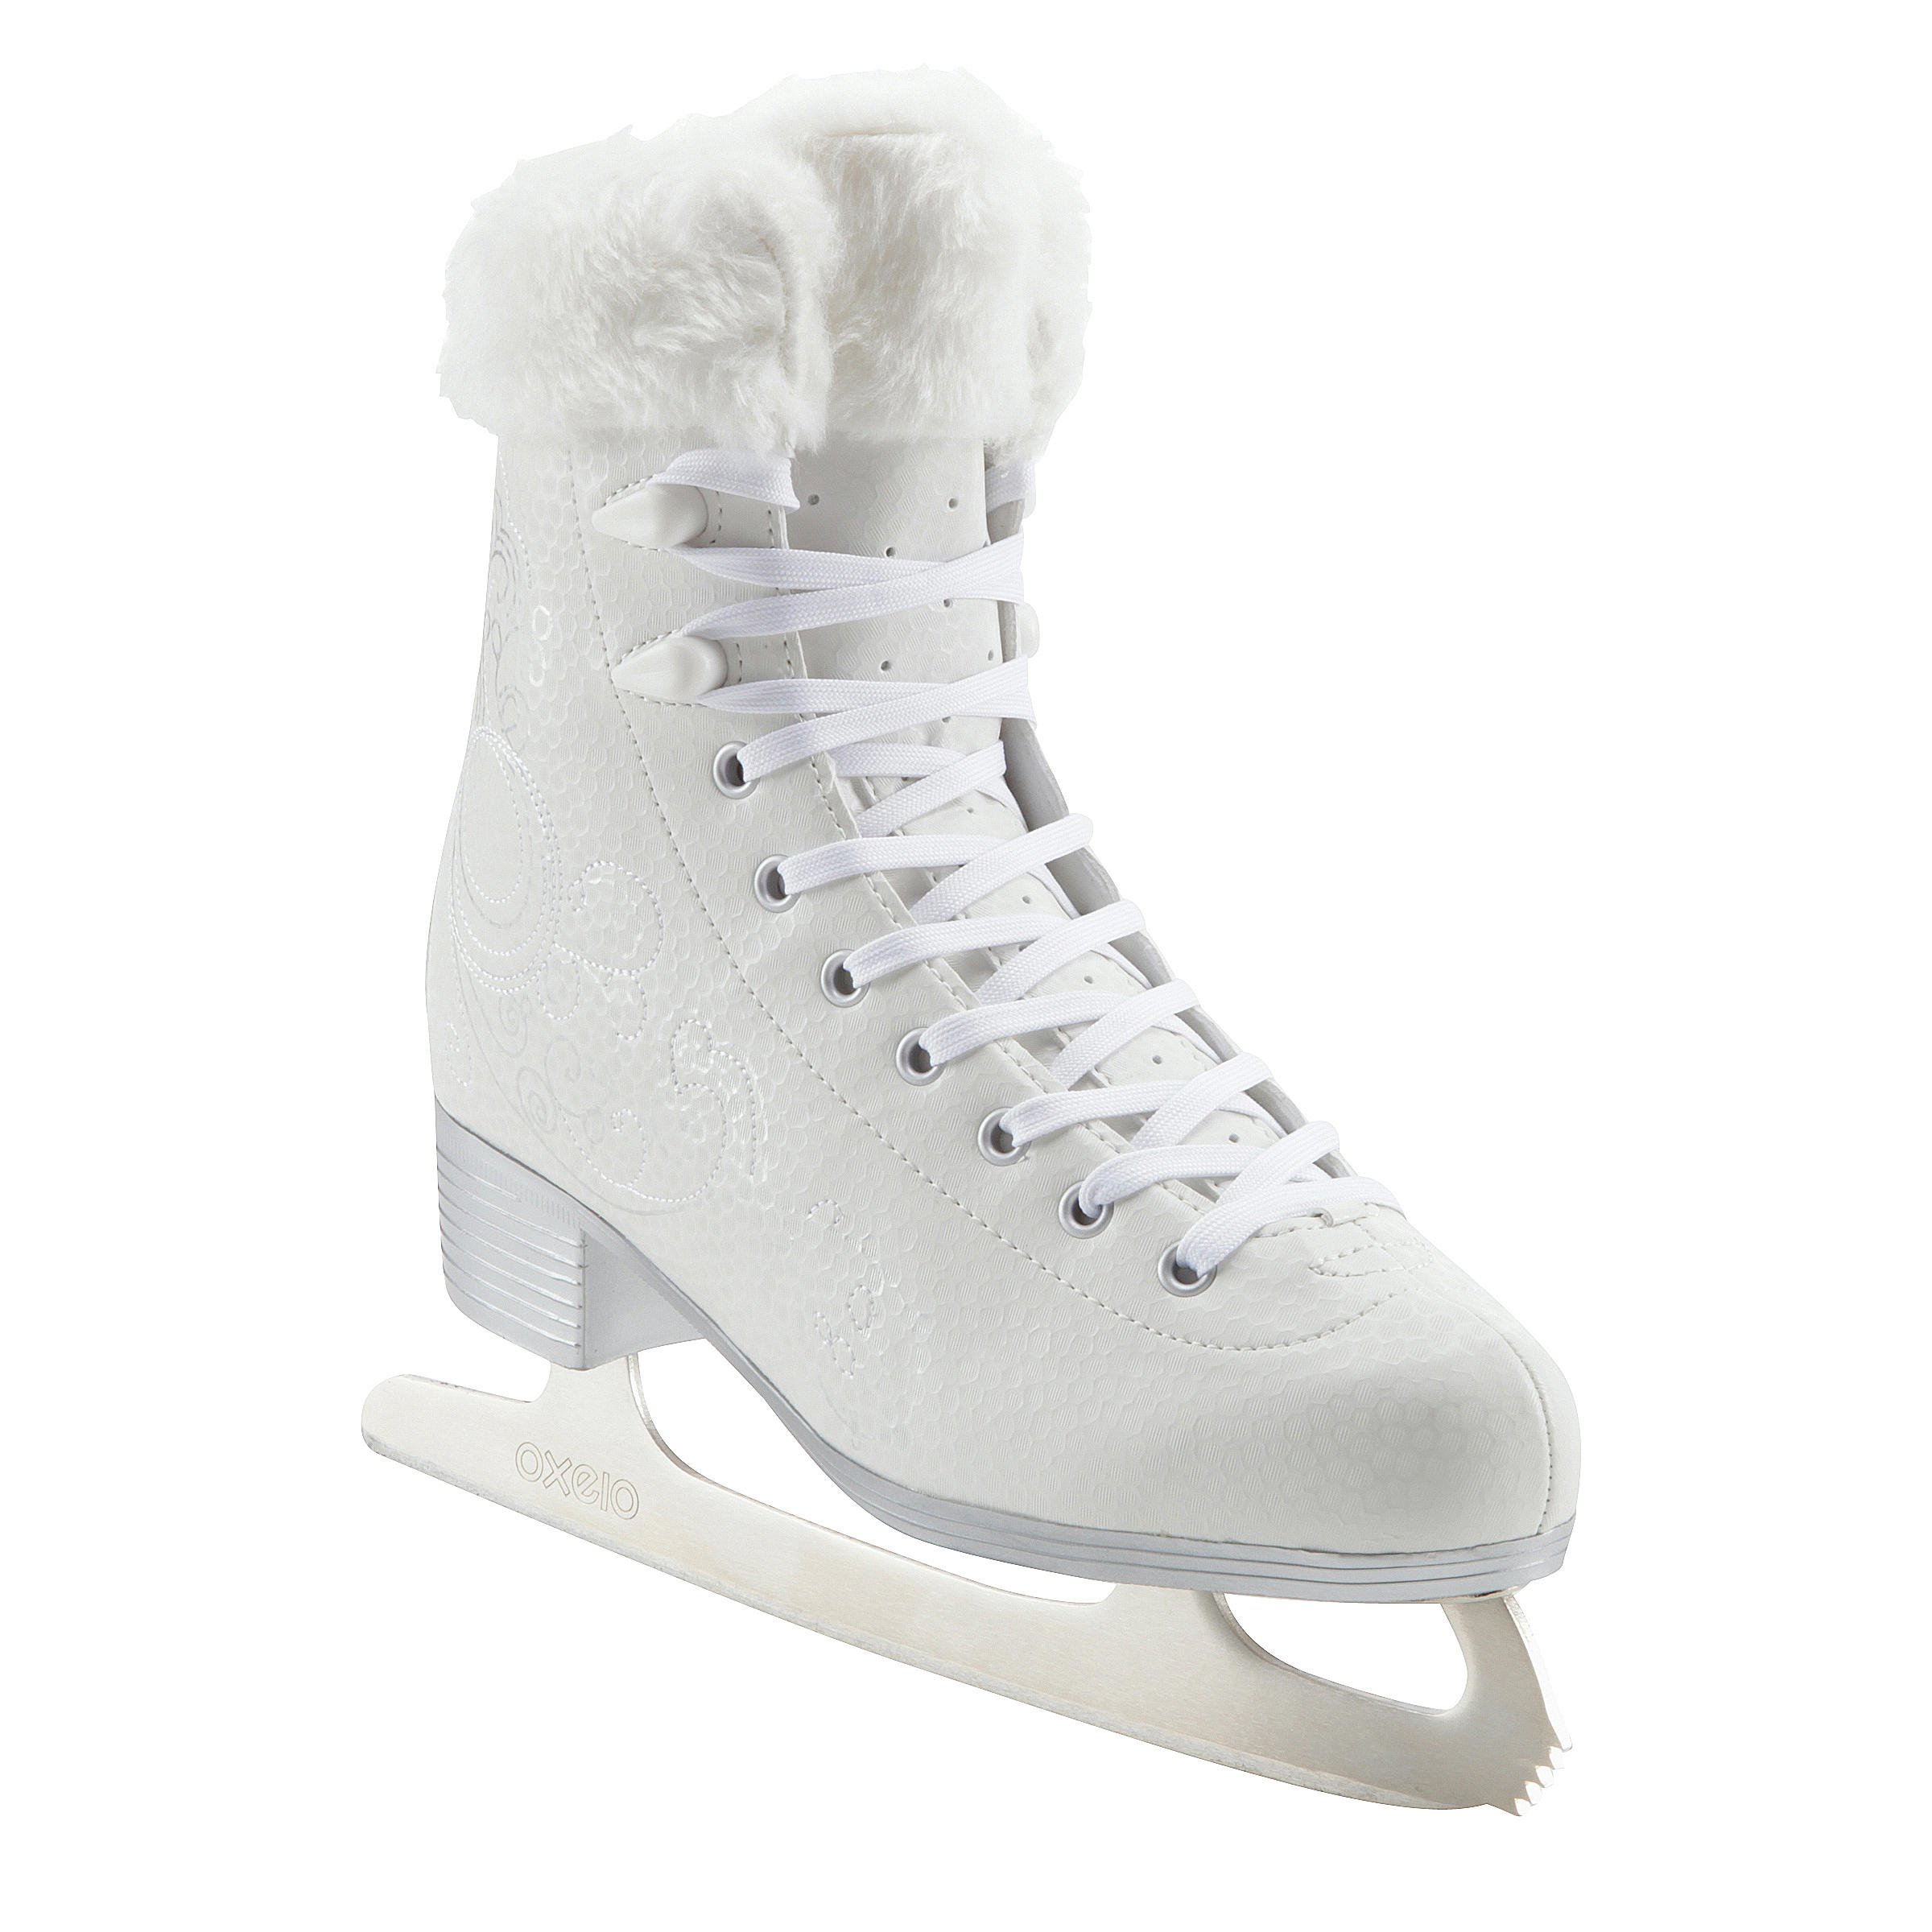 Kinder Mädchen Schuhe Sonstige Sport Sonstige Neu neue Schlittschuhe Gr 33 weiß Eiskunstlauf 